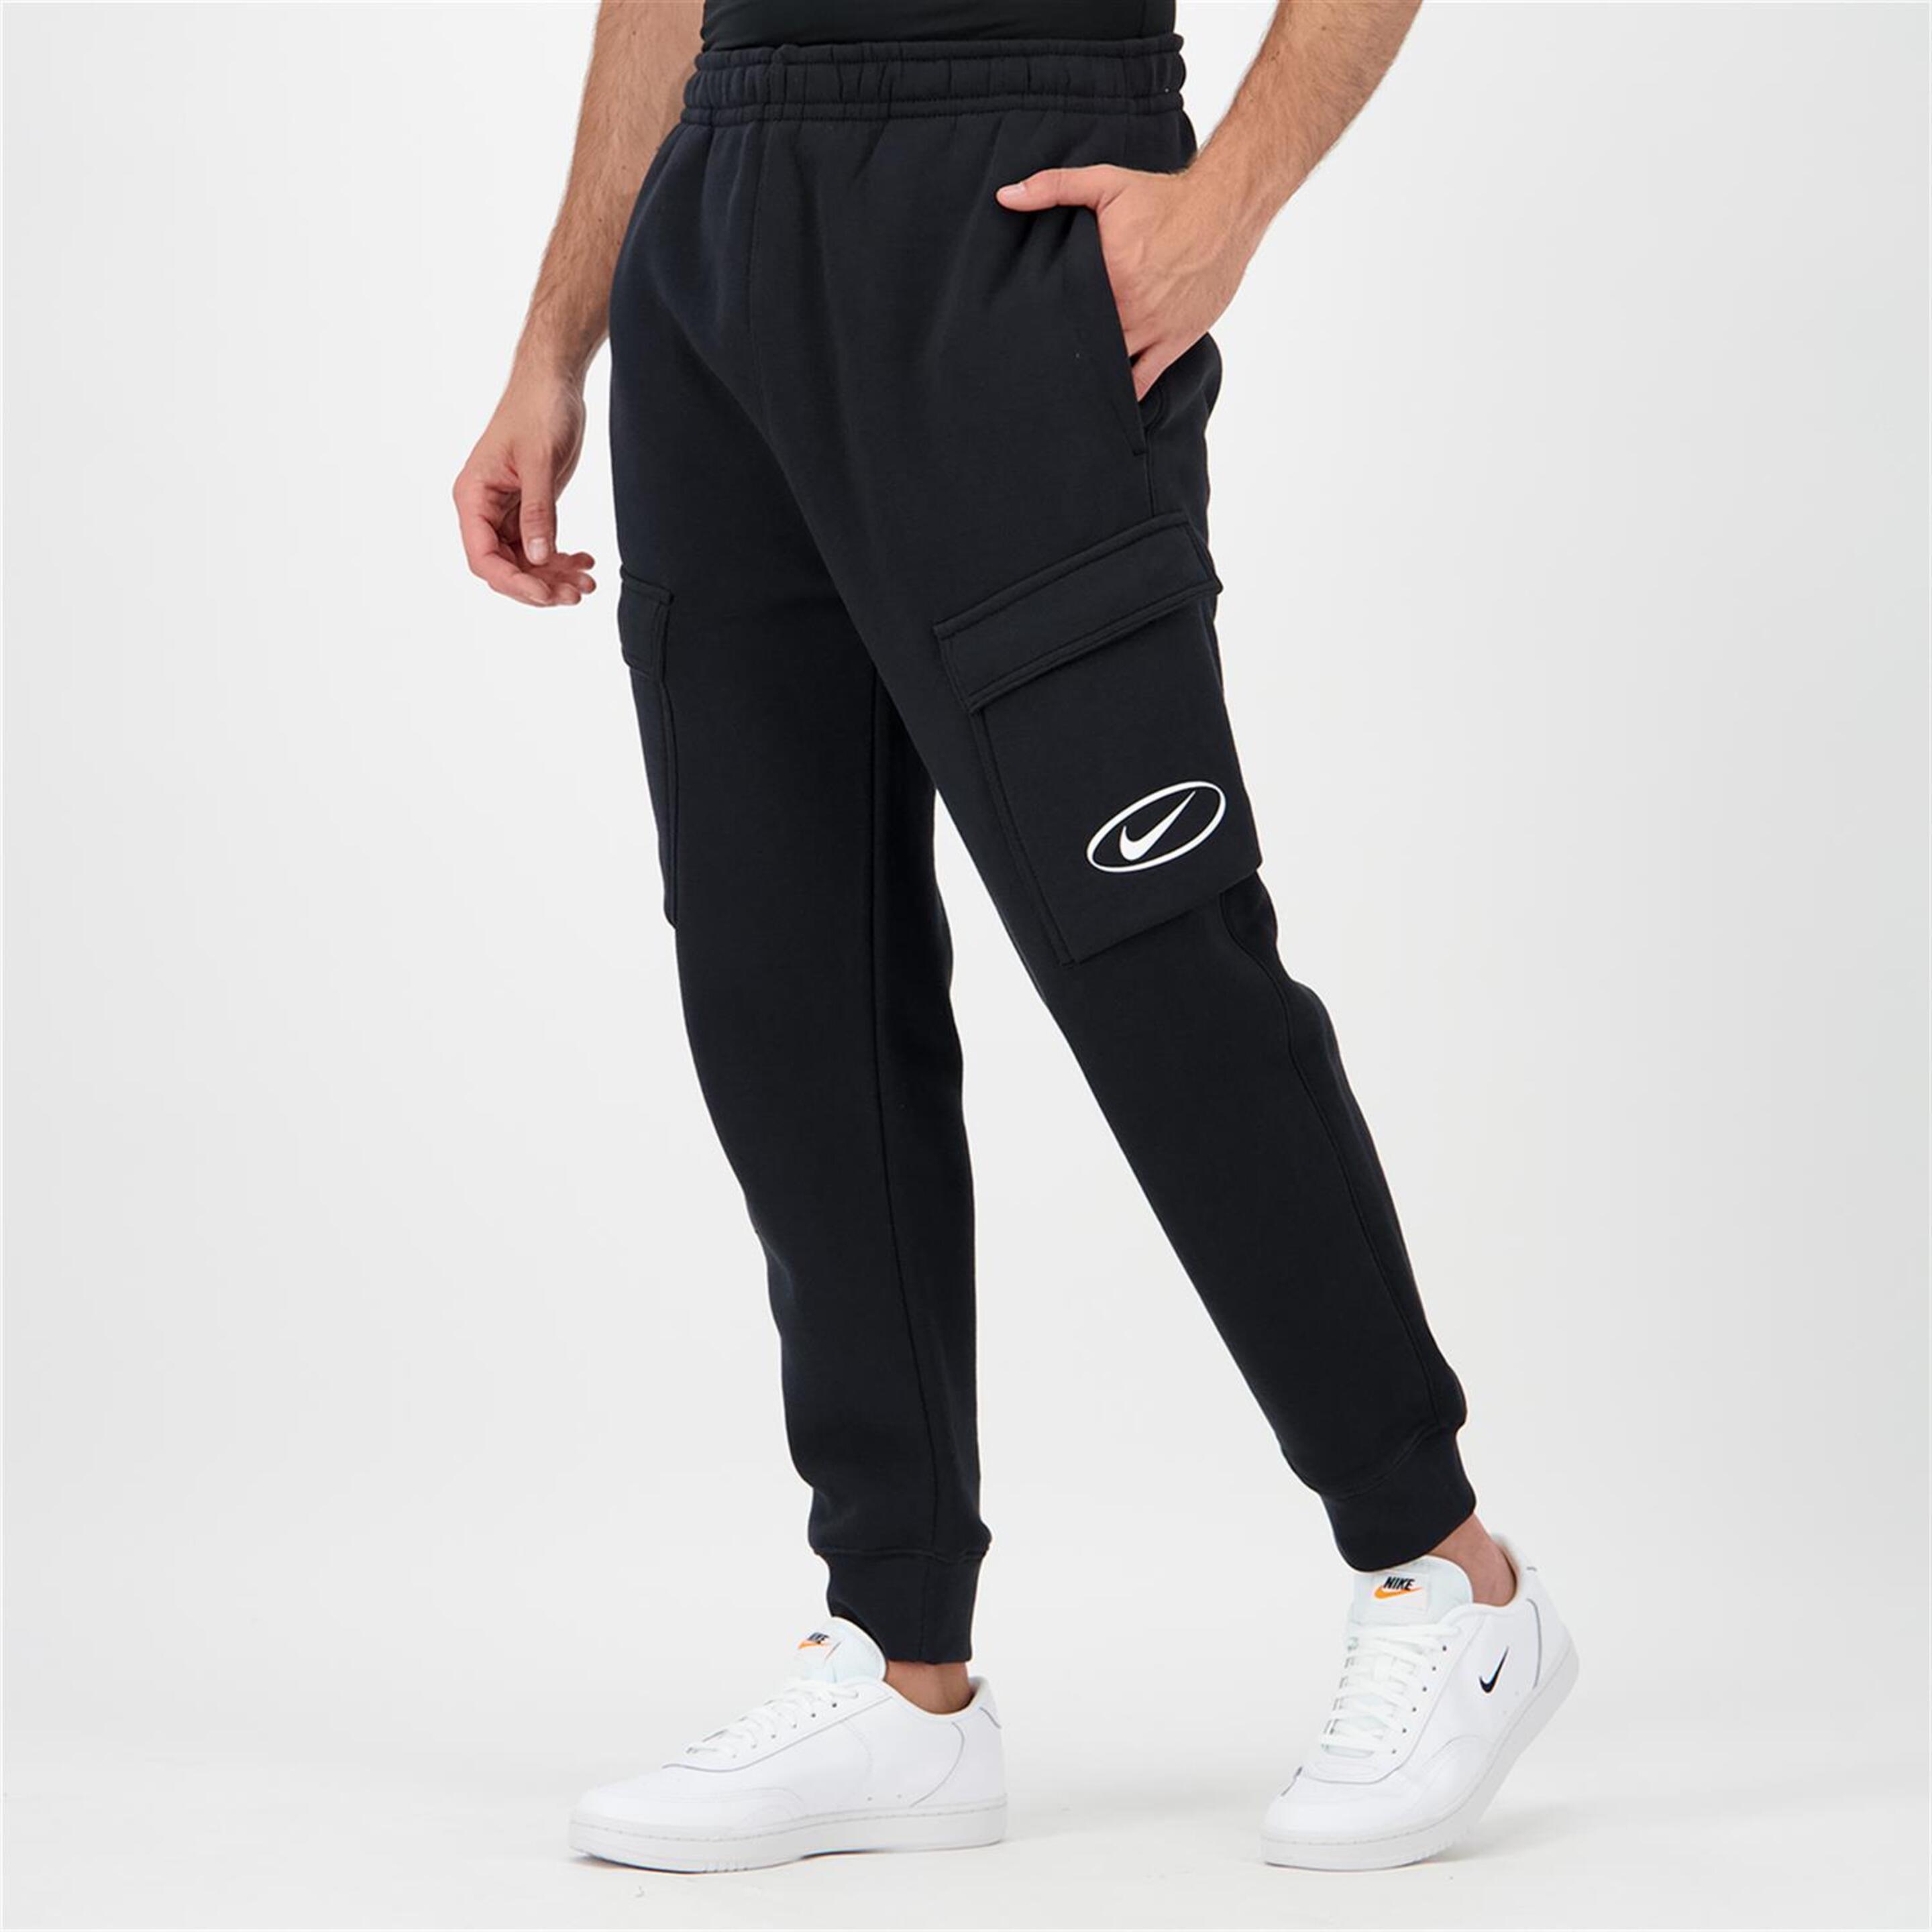 Pantalón Puño Nike - negro - Pantalón Cargo Hombre